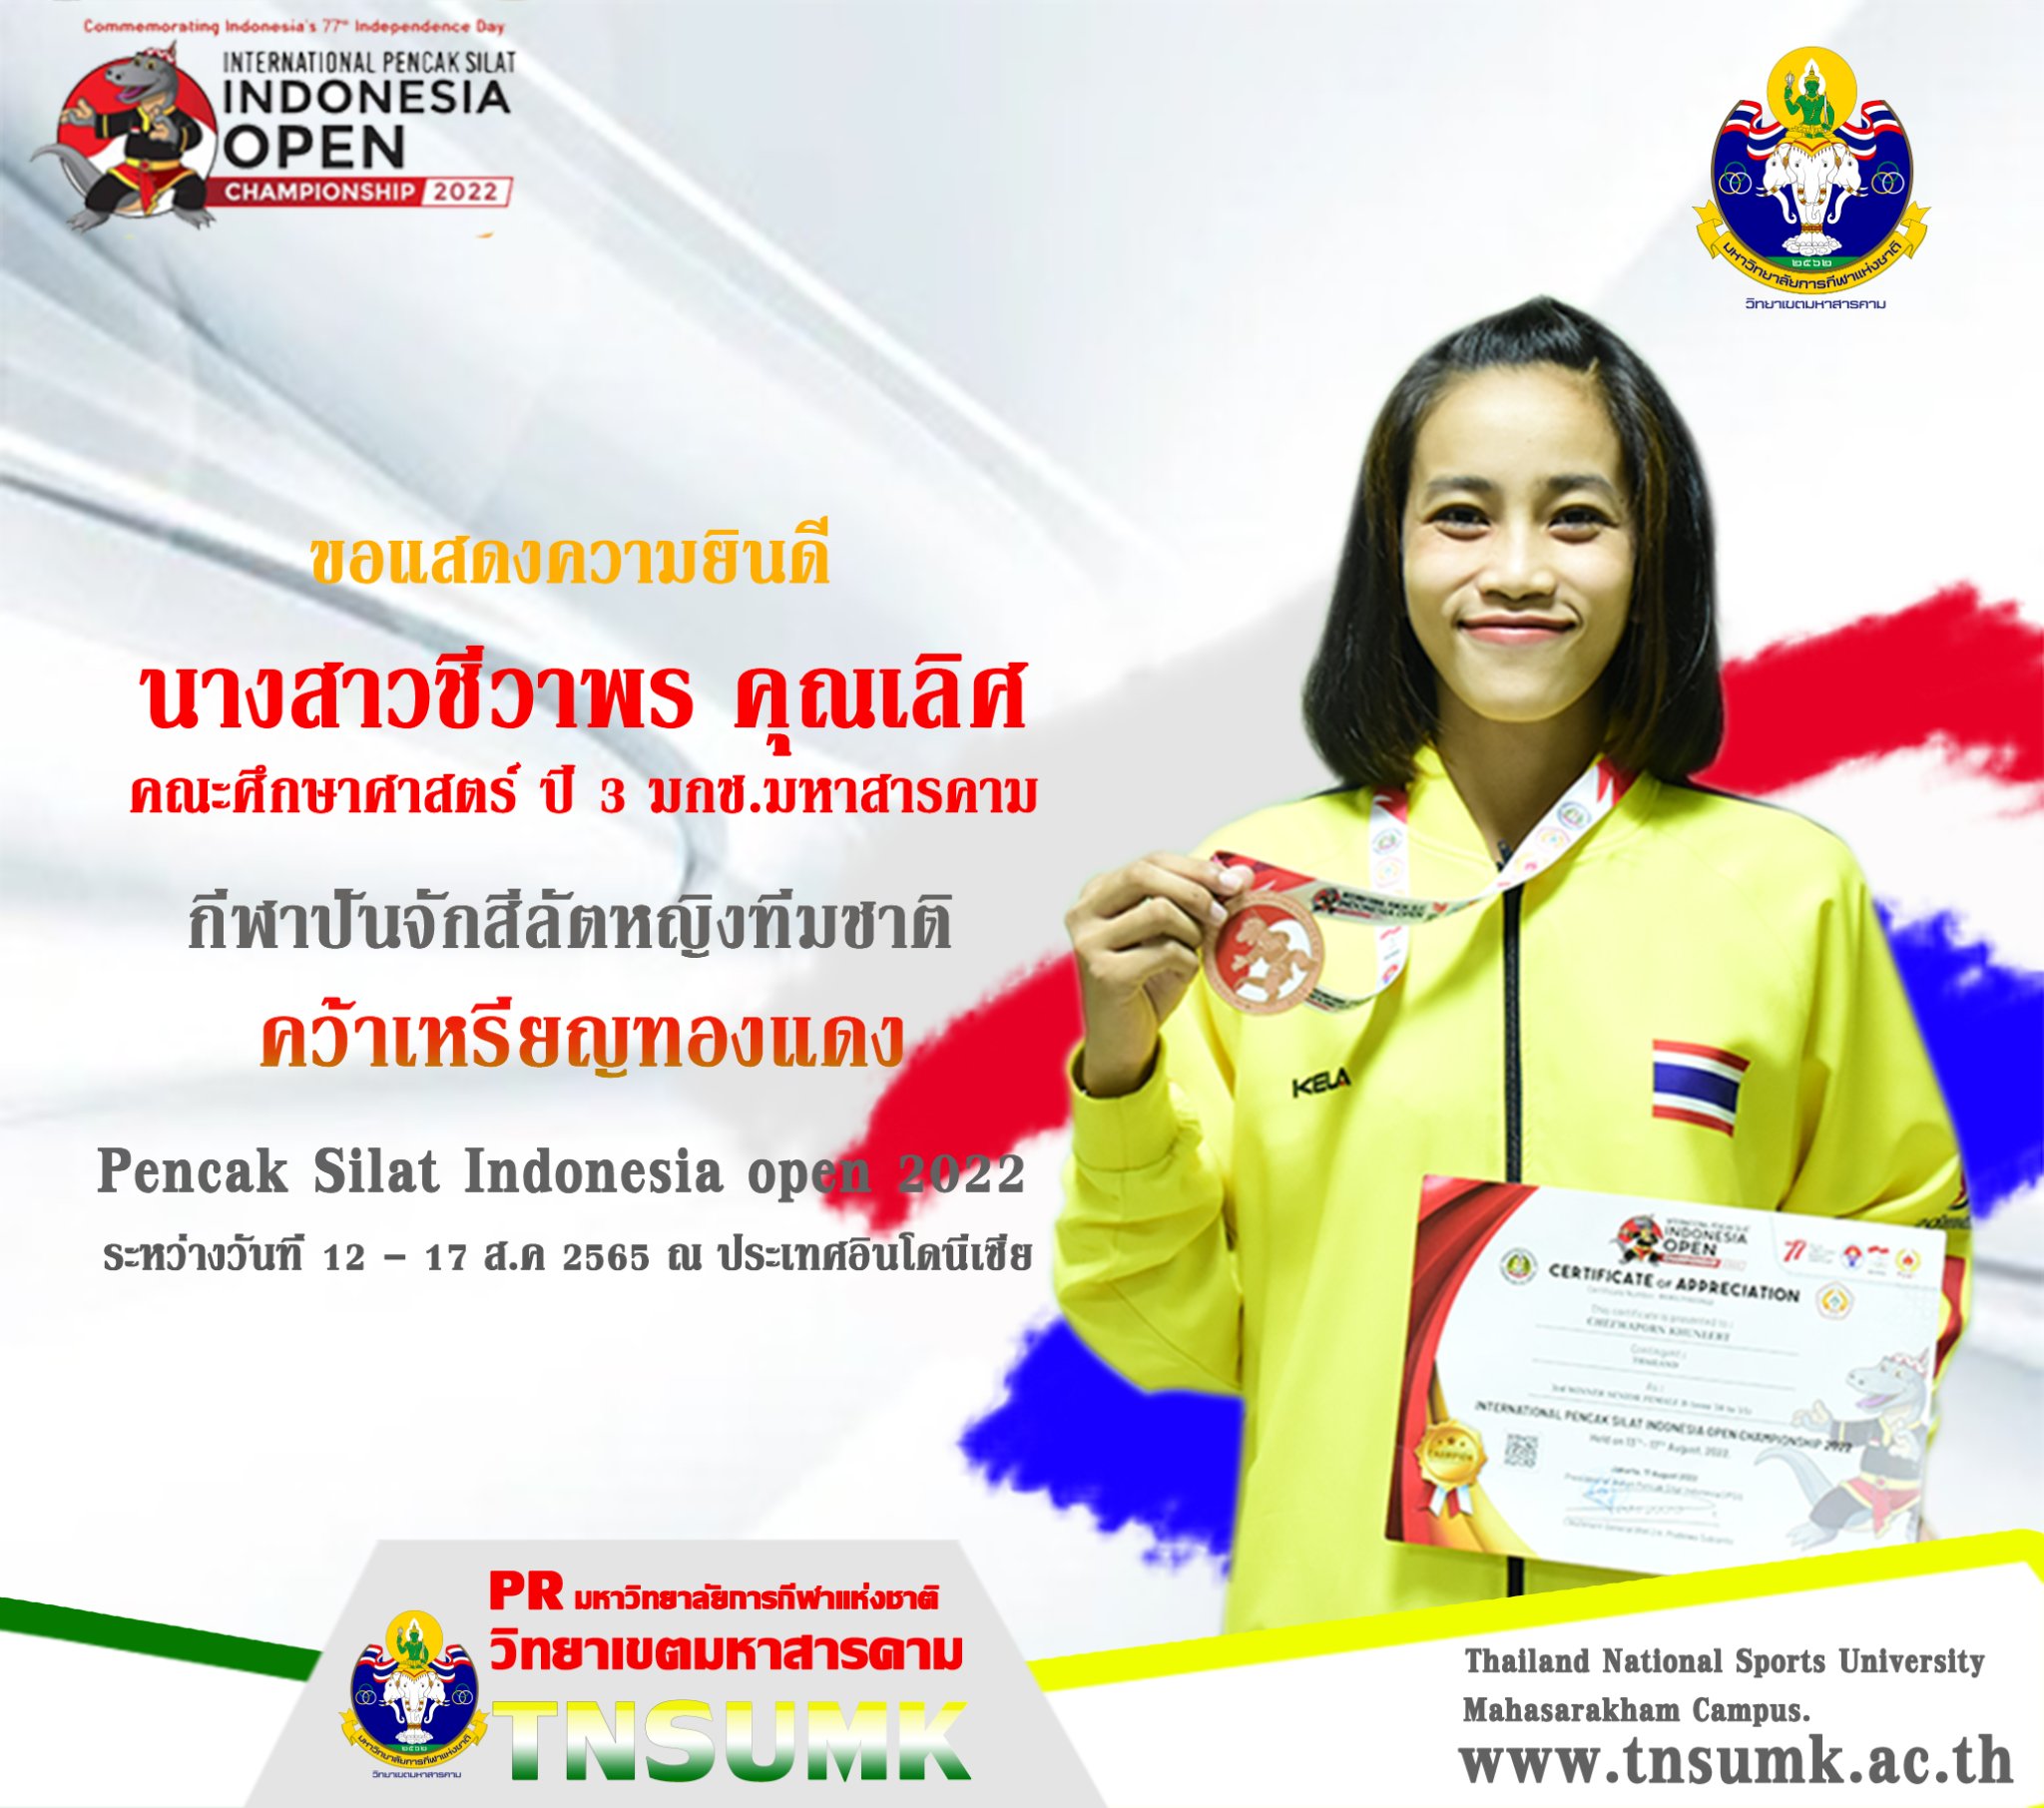 ขอแสดงความยินดีนักกีฬาปันจักสีลัตหญิงทีมชาติ คว้าเหรียญทองแดง Pencak Silat Indonesia Open Championship 2022